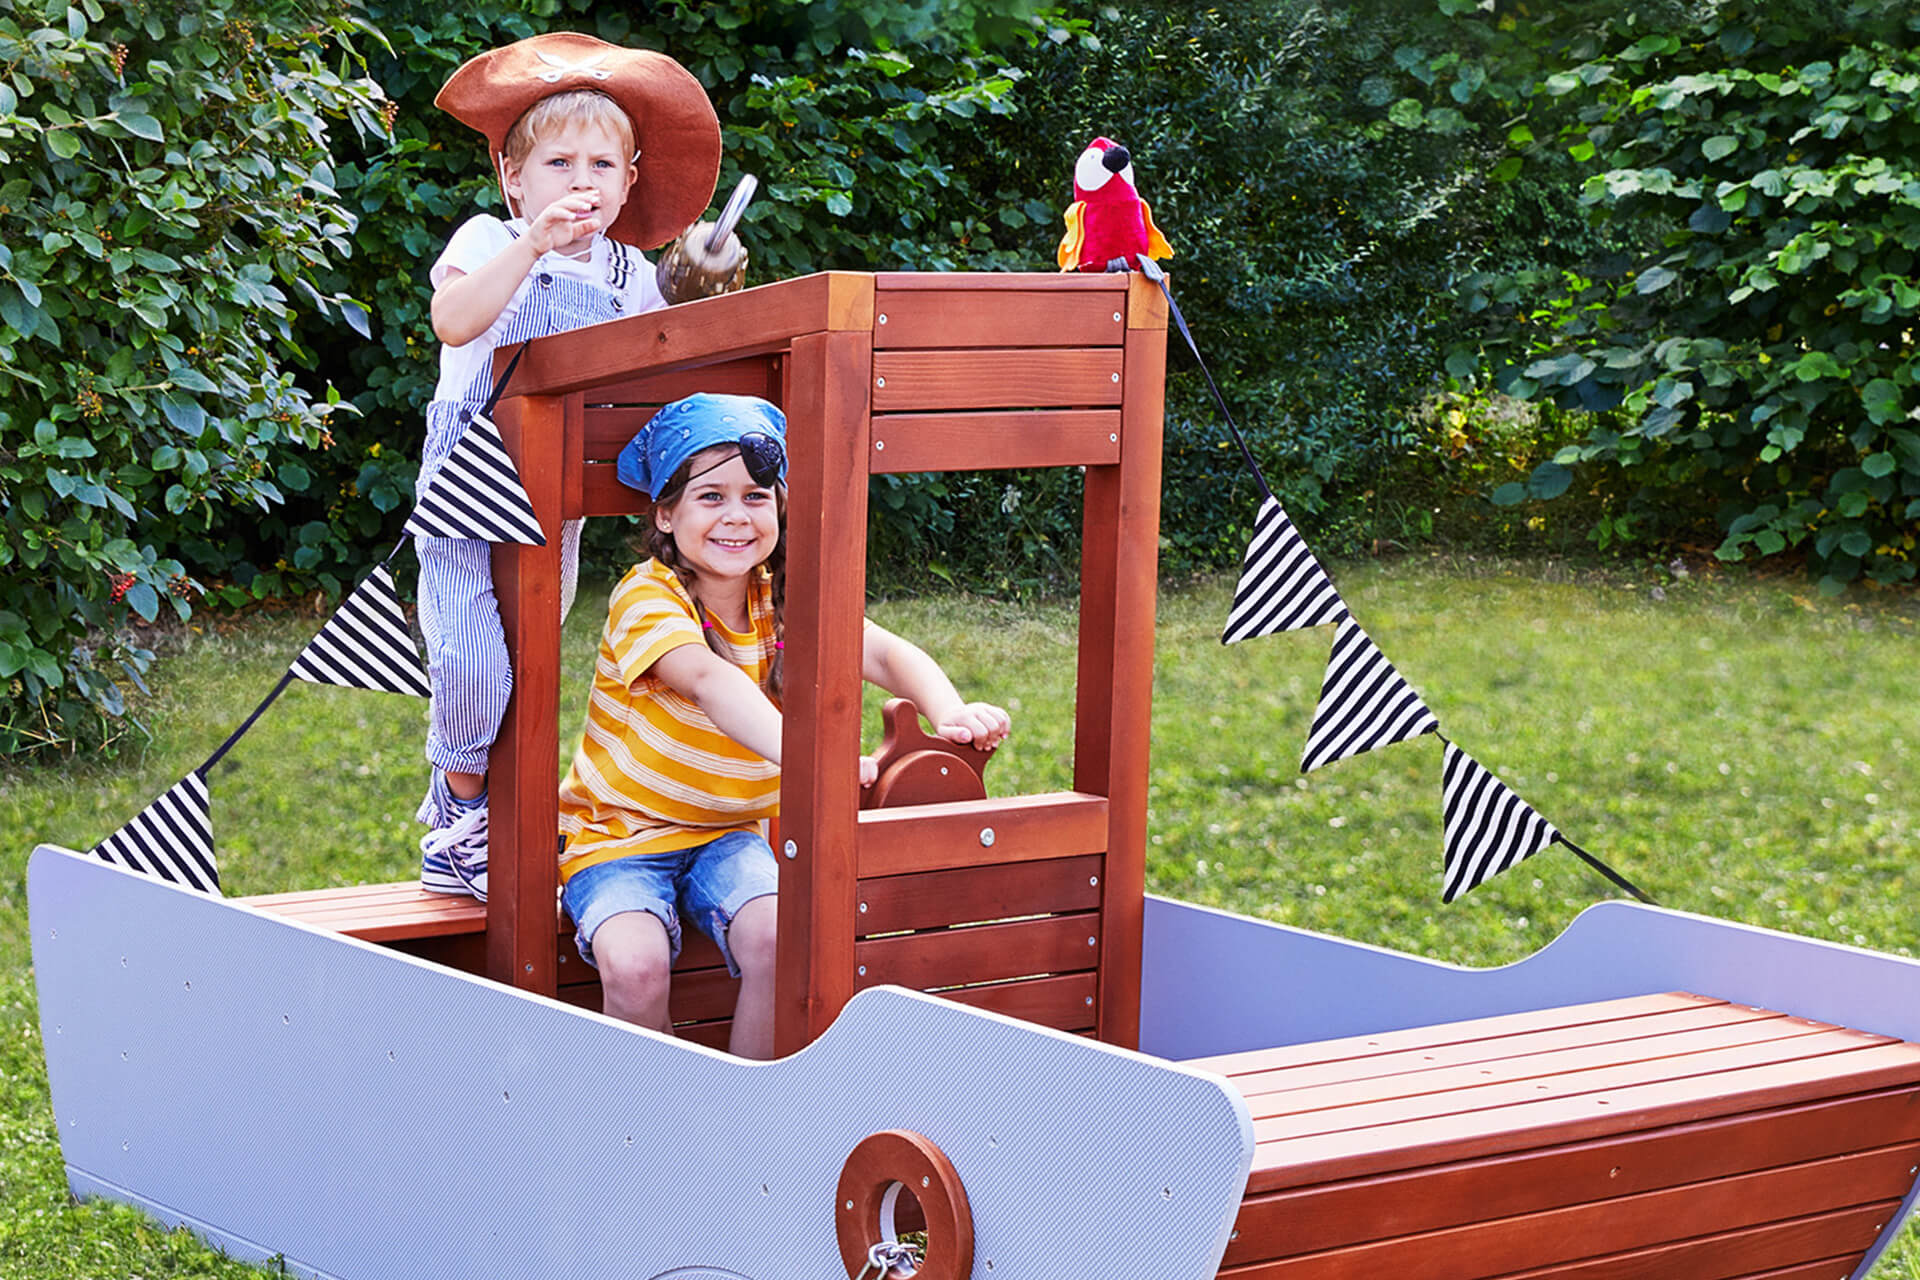 Education | Kindergarten | 2 | Image | Outdoorspielzeug | Mädchen mit blauen Hut sitzt im Schiff aus Holz, Junge steht dahinter